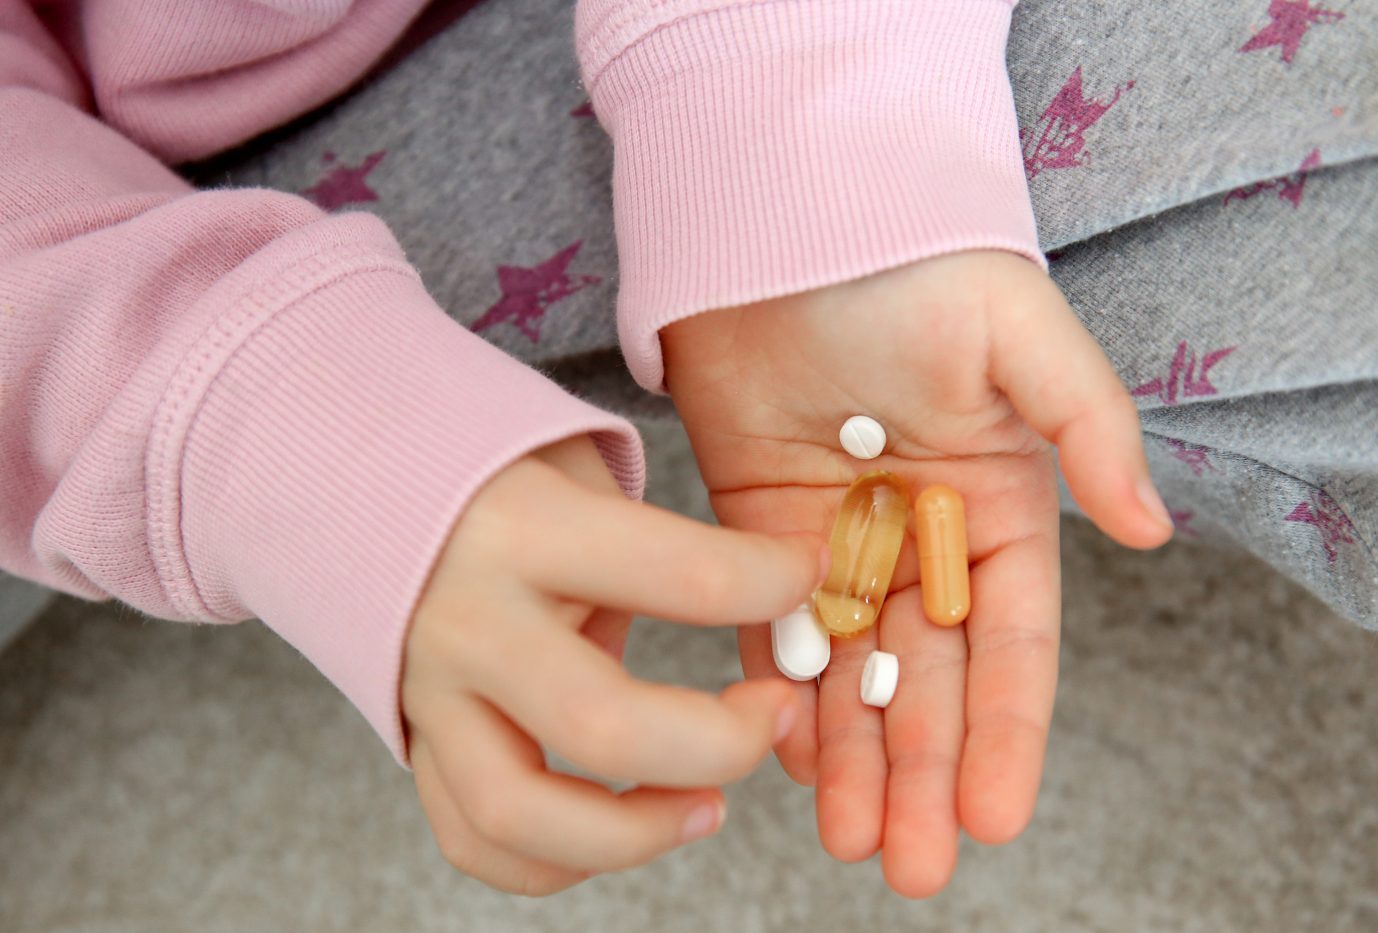 Kind hält Tabletten in der Hand: Texas Gouverneur Greg Abbott will die Behandlung von Minderjährigen mit Pubertätsblockern oder Hormontherapien als Kindesmißbrauch ahnden